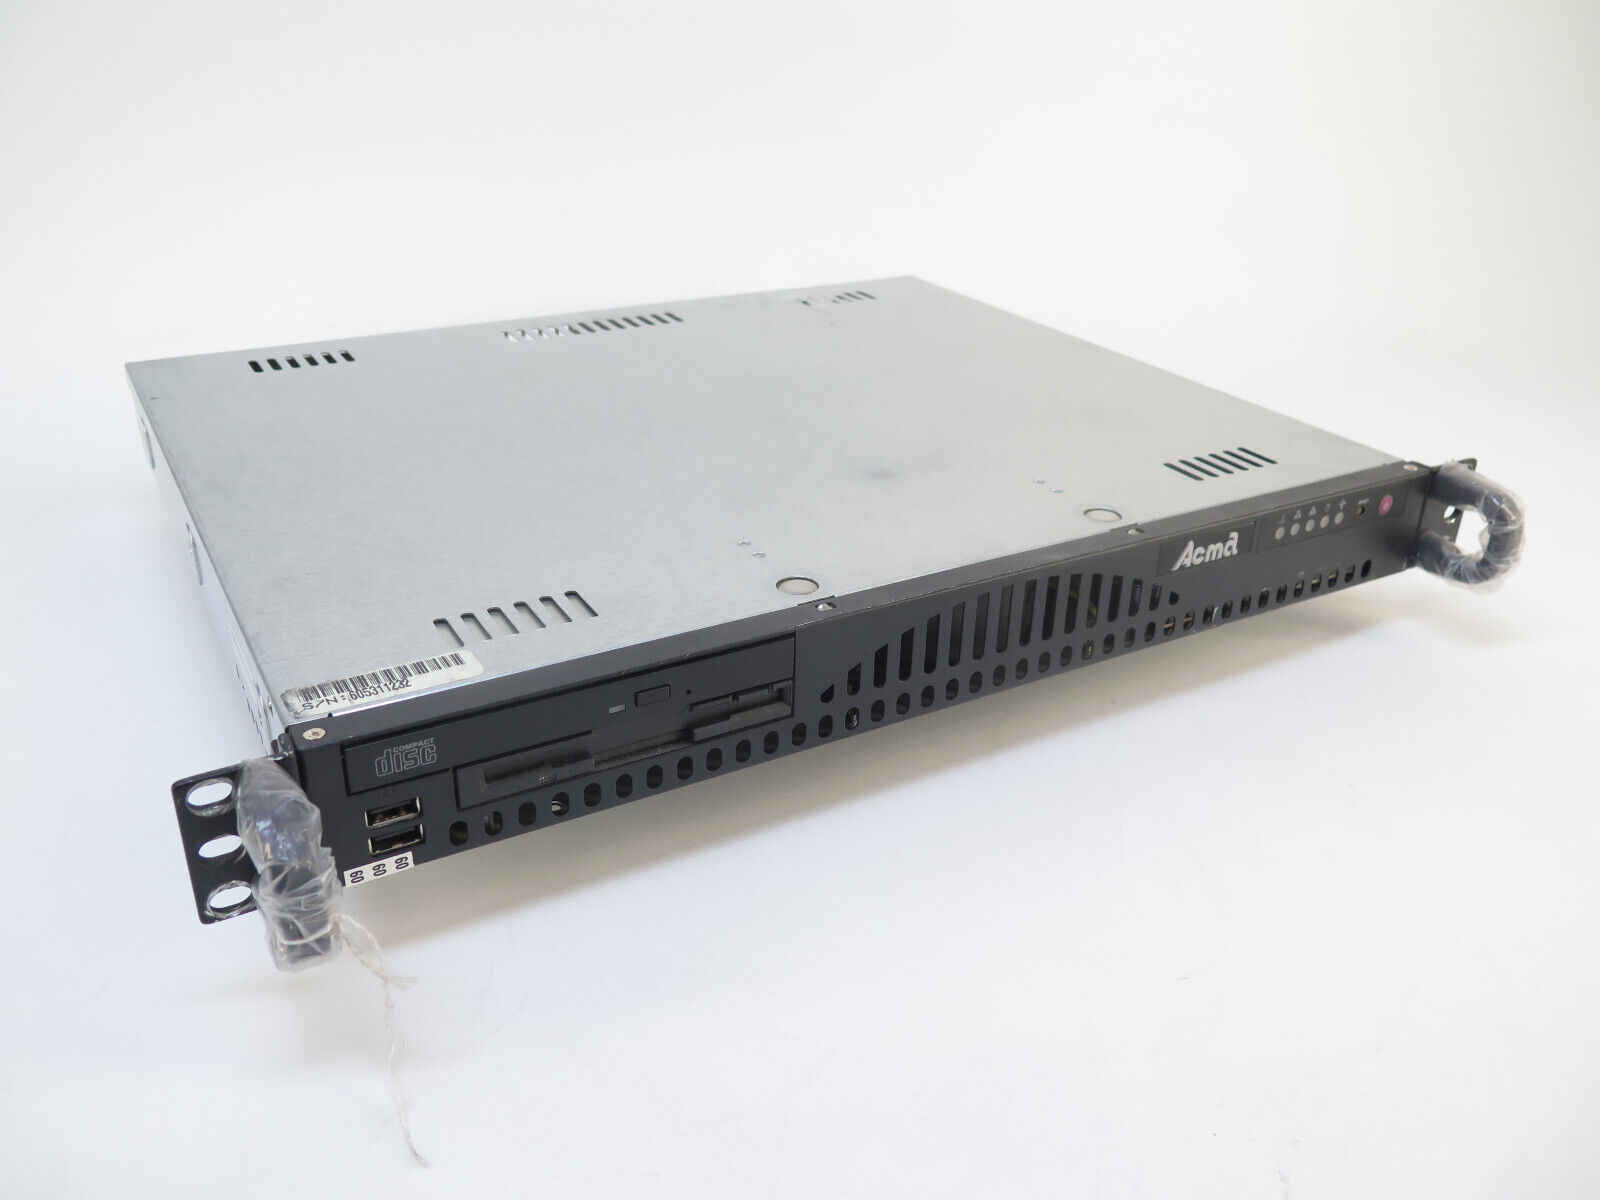 SuperMicro Acma 5013C-M SuperServer Server Pentium 4 2.80GHz, 1GB RAM, 80GB HDD